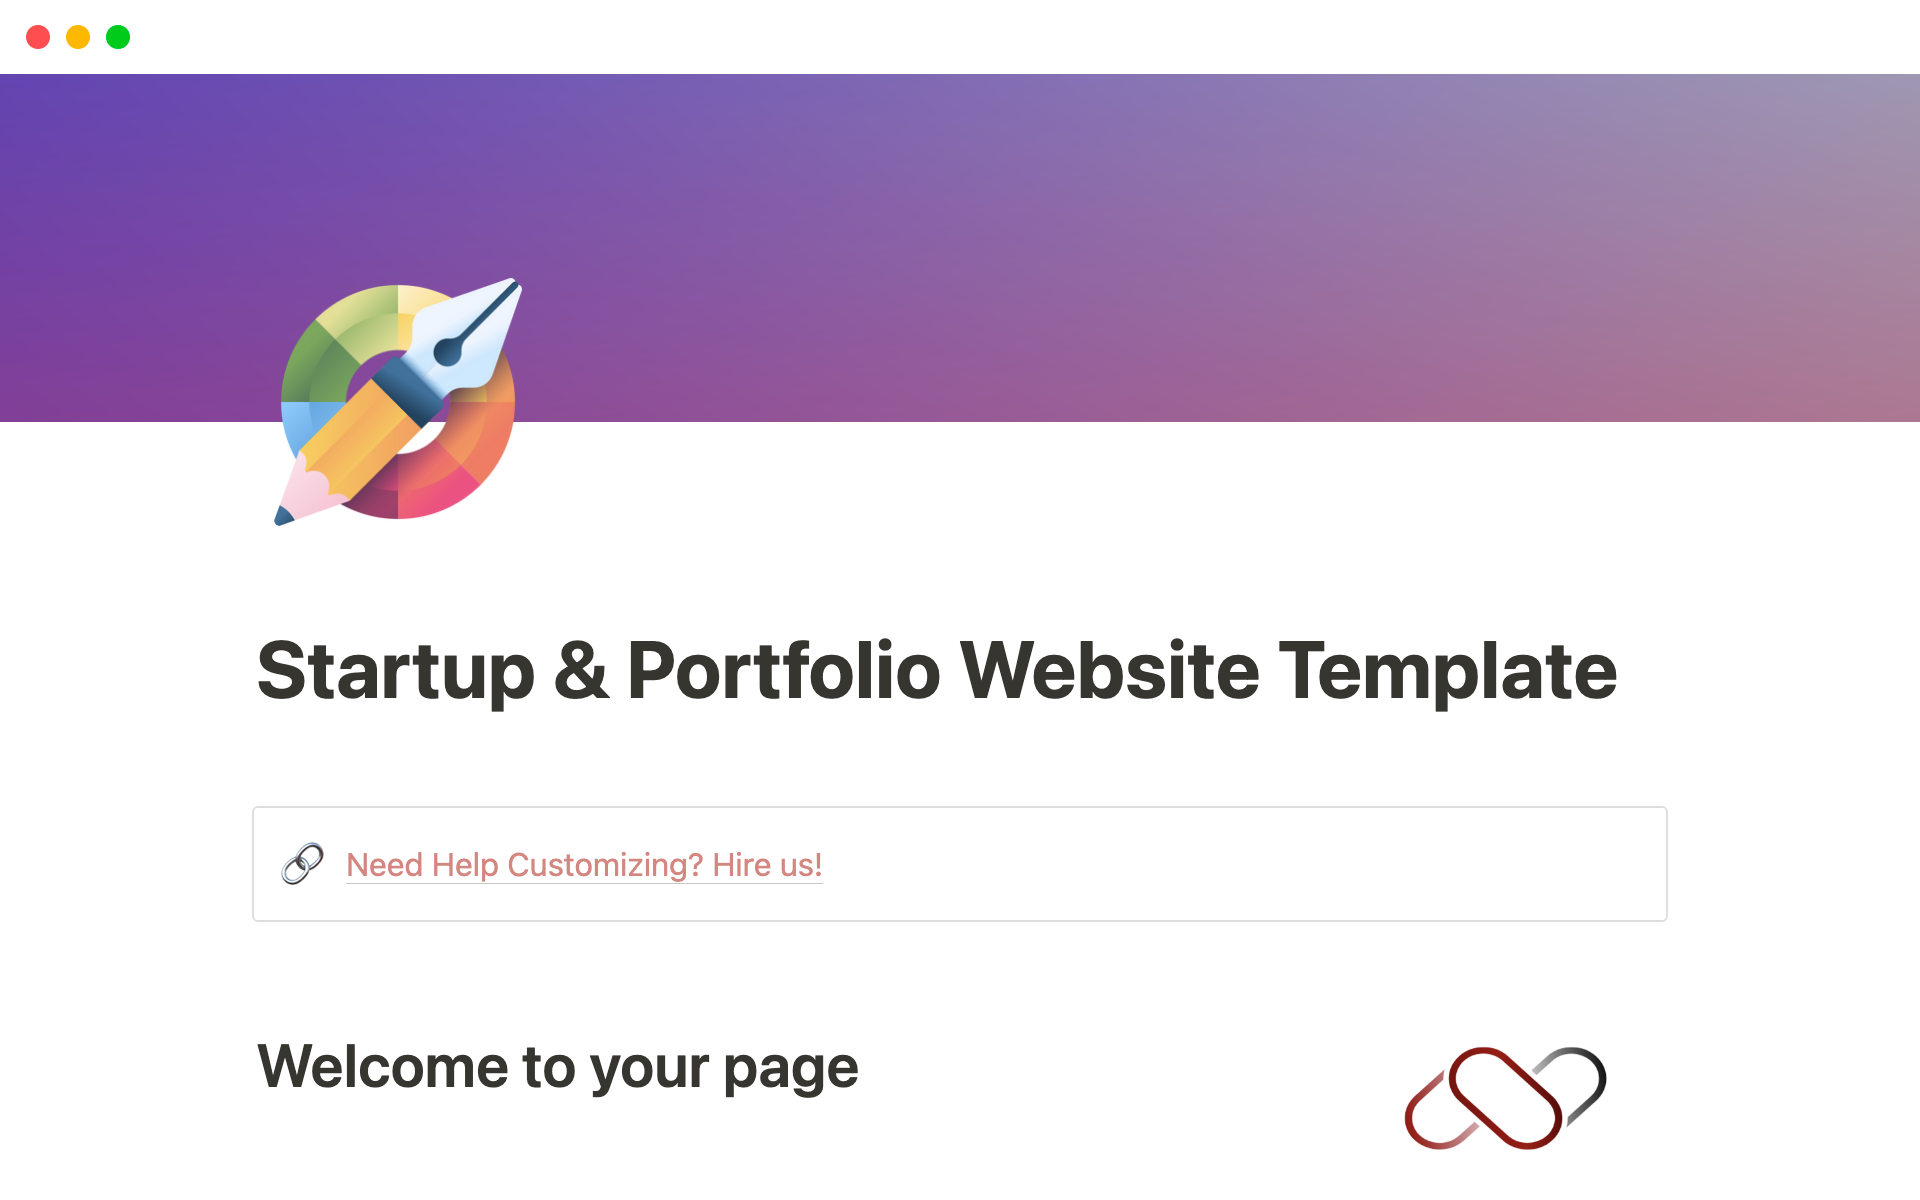 Uma prévia do modelo para Startup & Portfolio Website Template